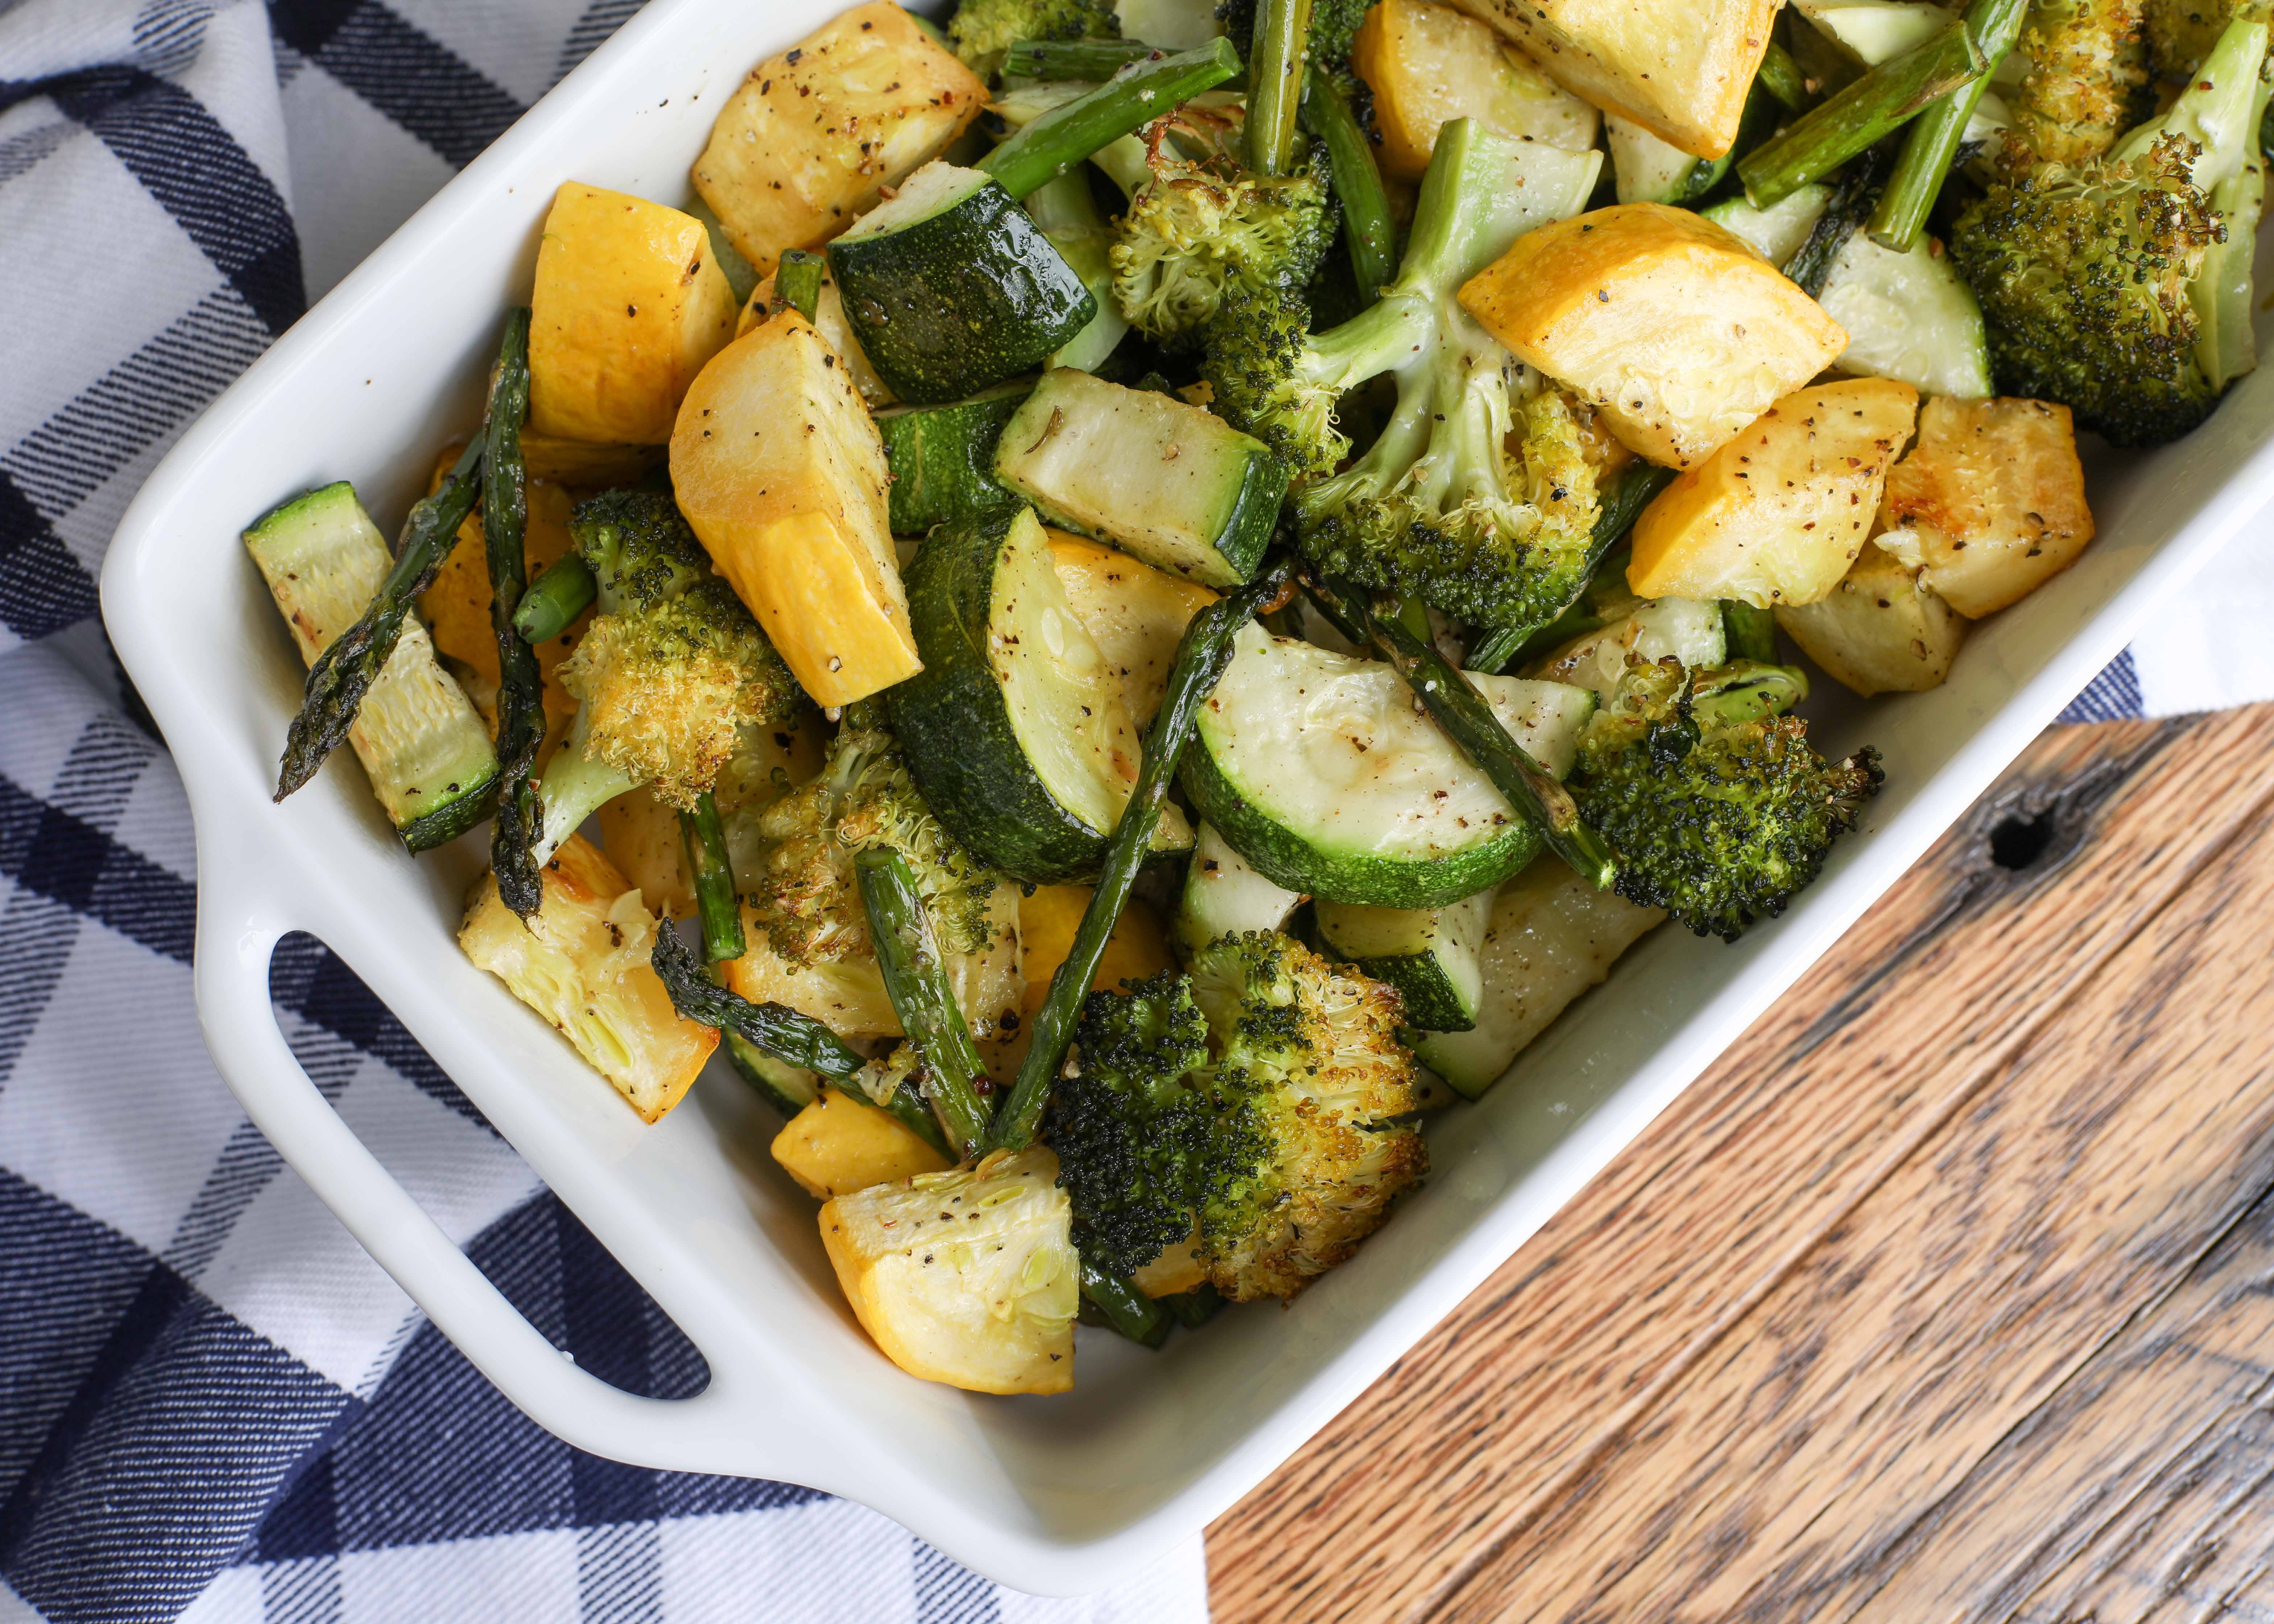 Broccoli and asparagus recipes